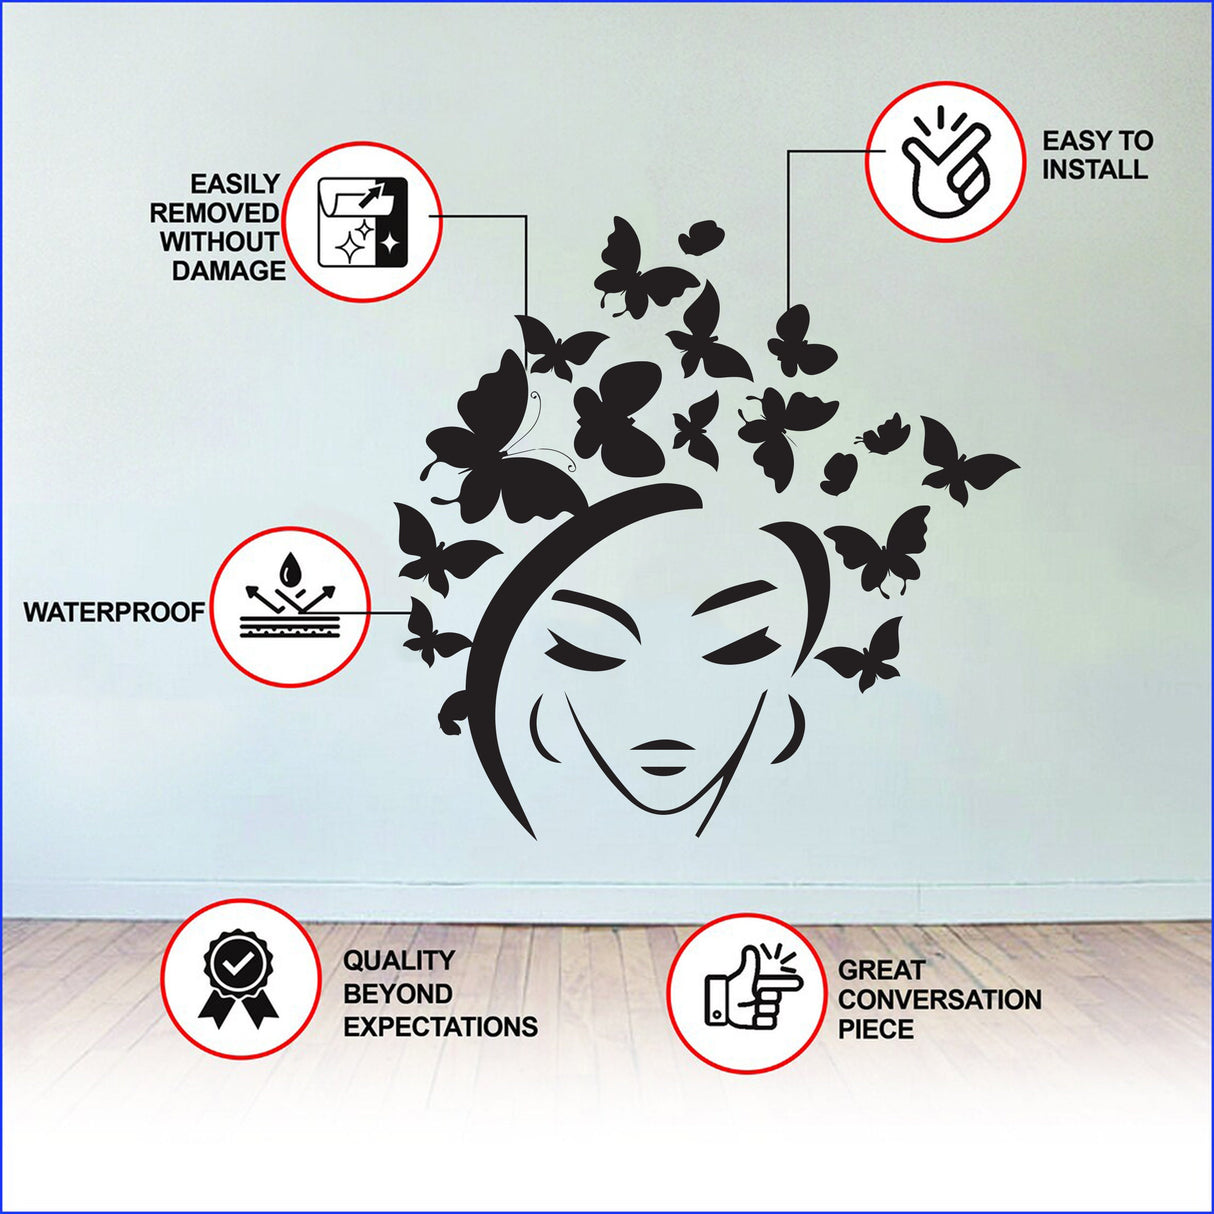 Butterflies Hair Wall Decal - Butterfly Head Art Decor Vinyl Sticker